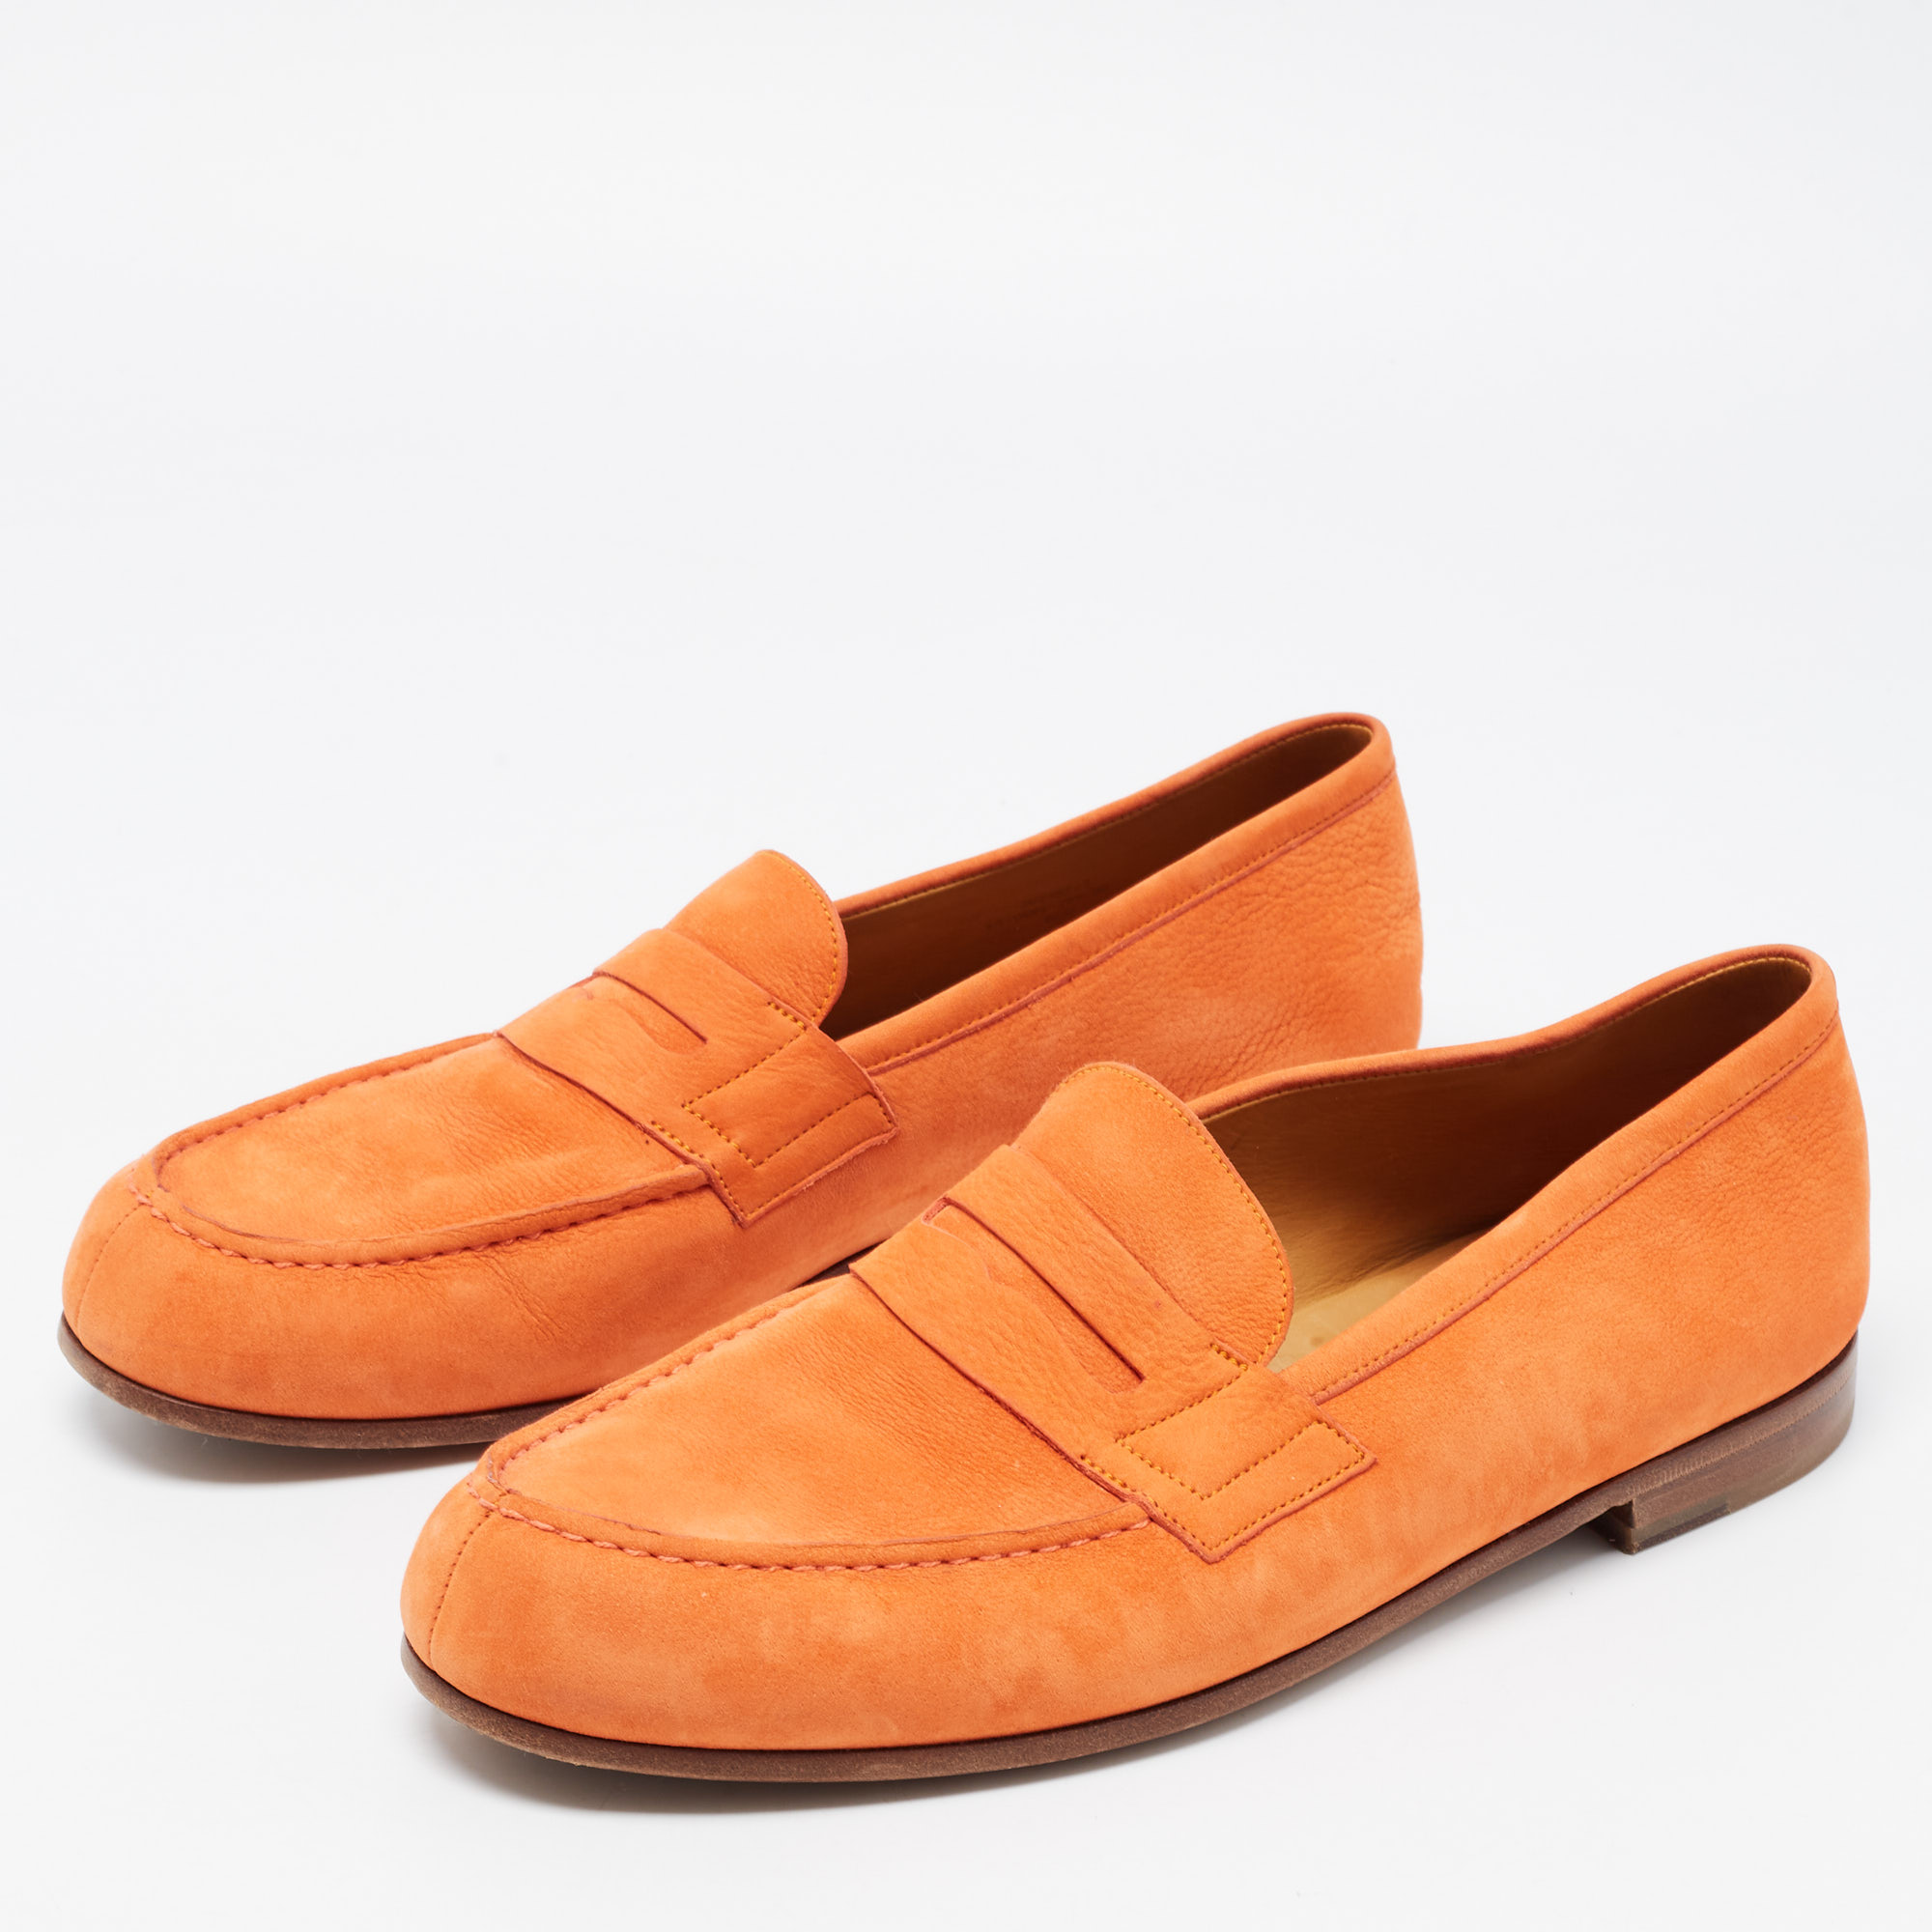 

J.M.Weston Orange Nubuck Leather Le Moc Weston Loafers Size